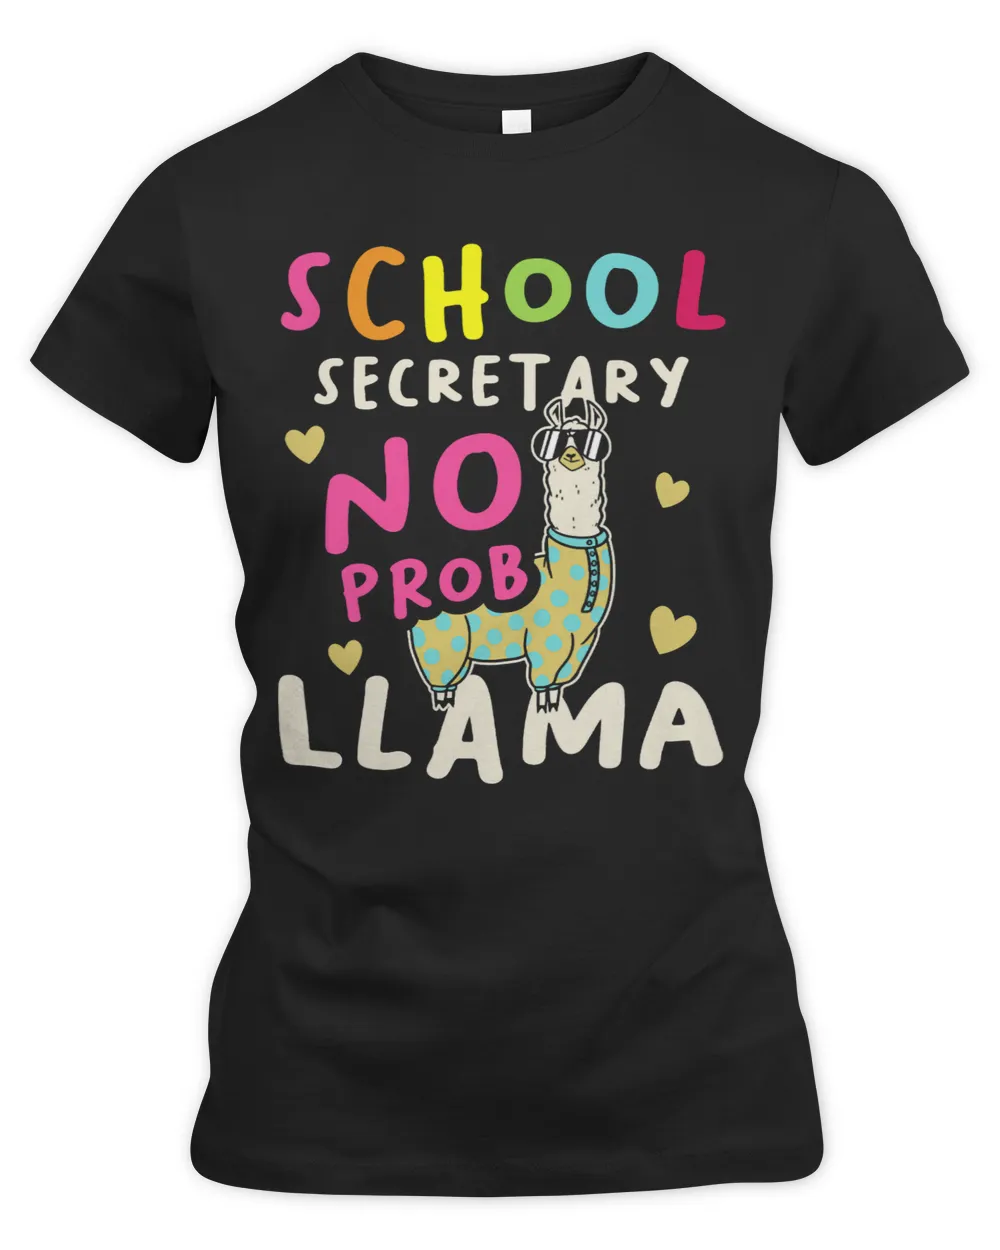 School Secretary No ProbLlama for a School secretary llama